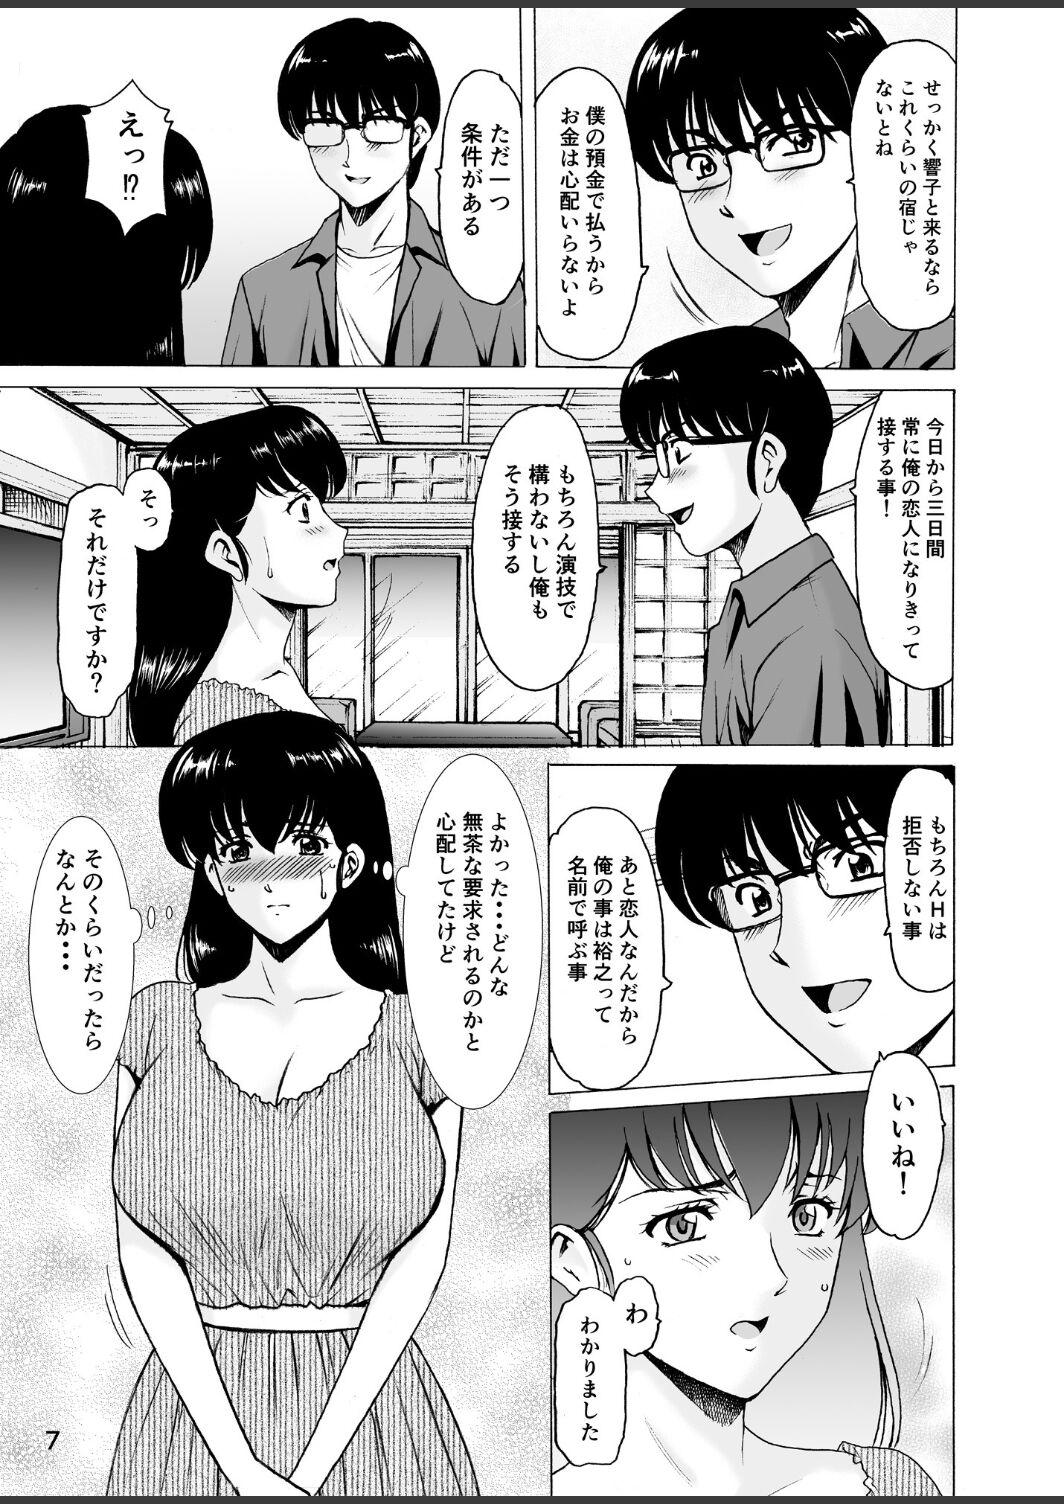 Chat Hitozuma Kanrinin Kyoko 10 - Maison ikkoku Stepmother - Page 7